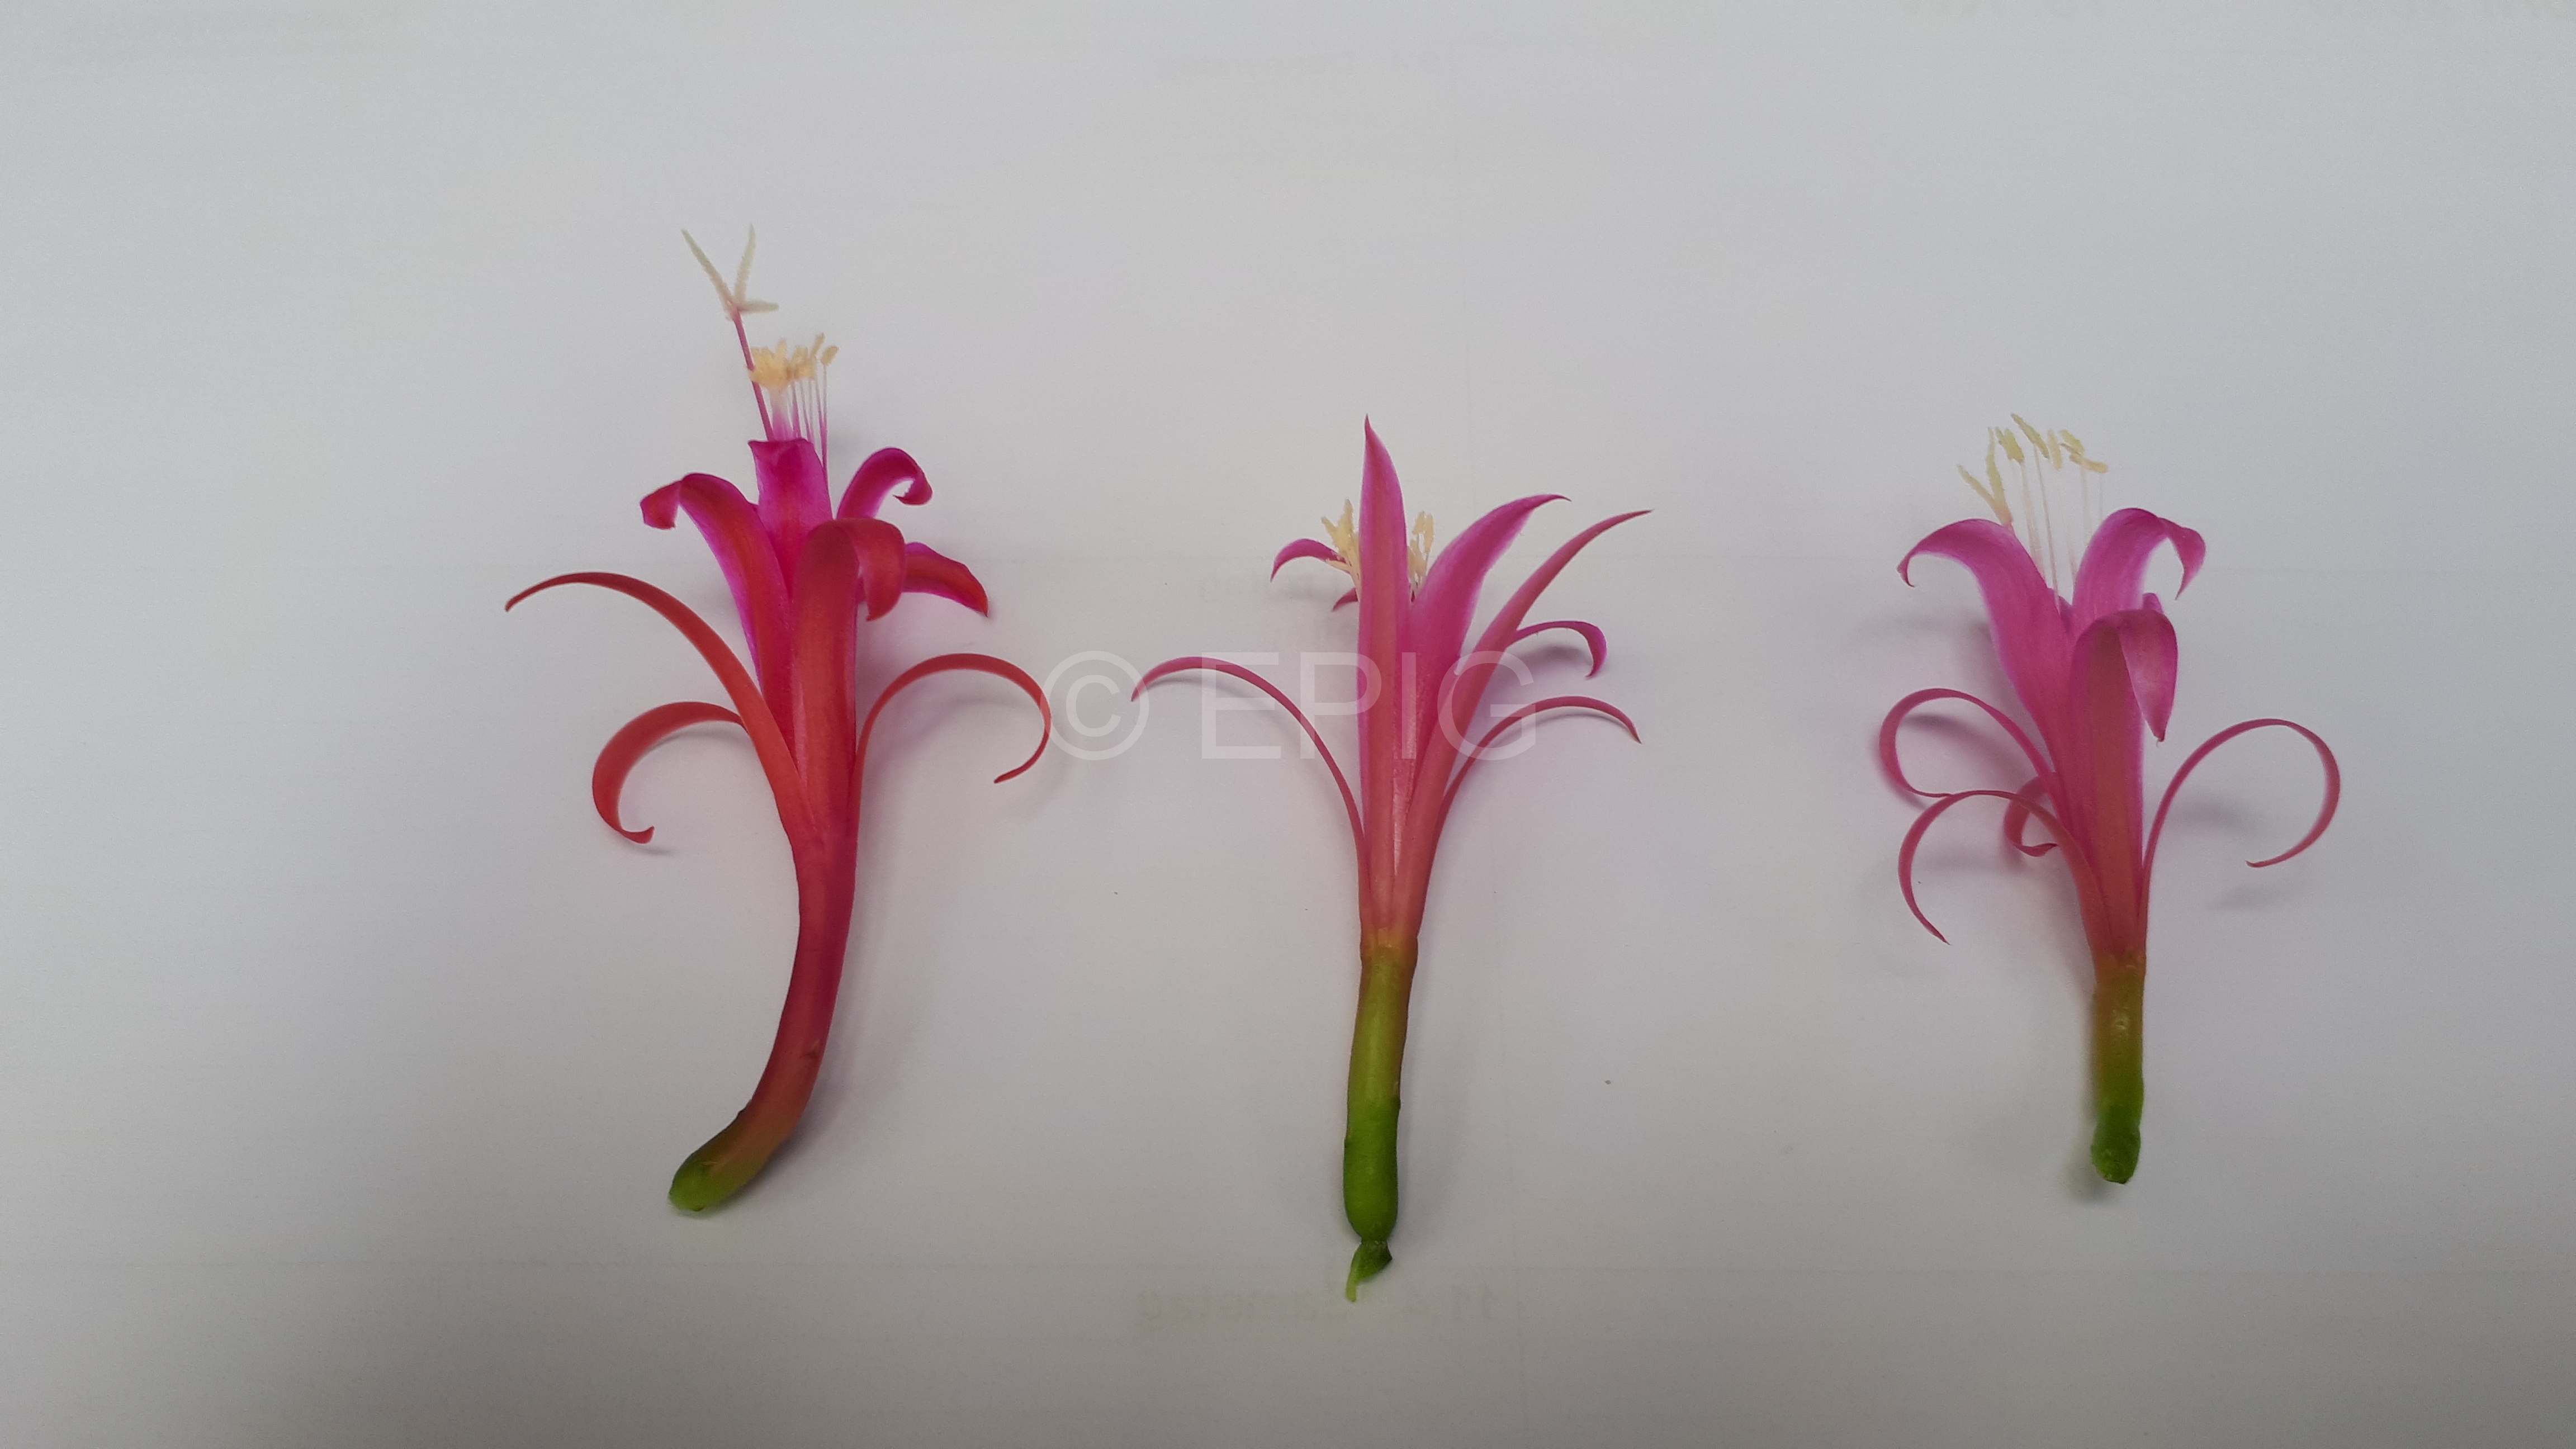 Disocactus biformis Vergleich verschiedener Blütenformen (Foto Tobias Pfeil)